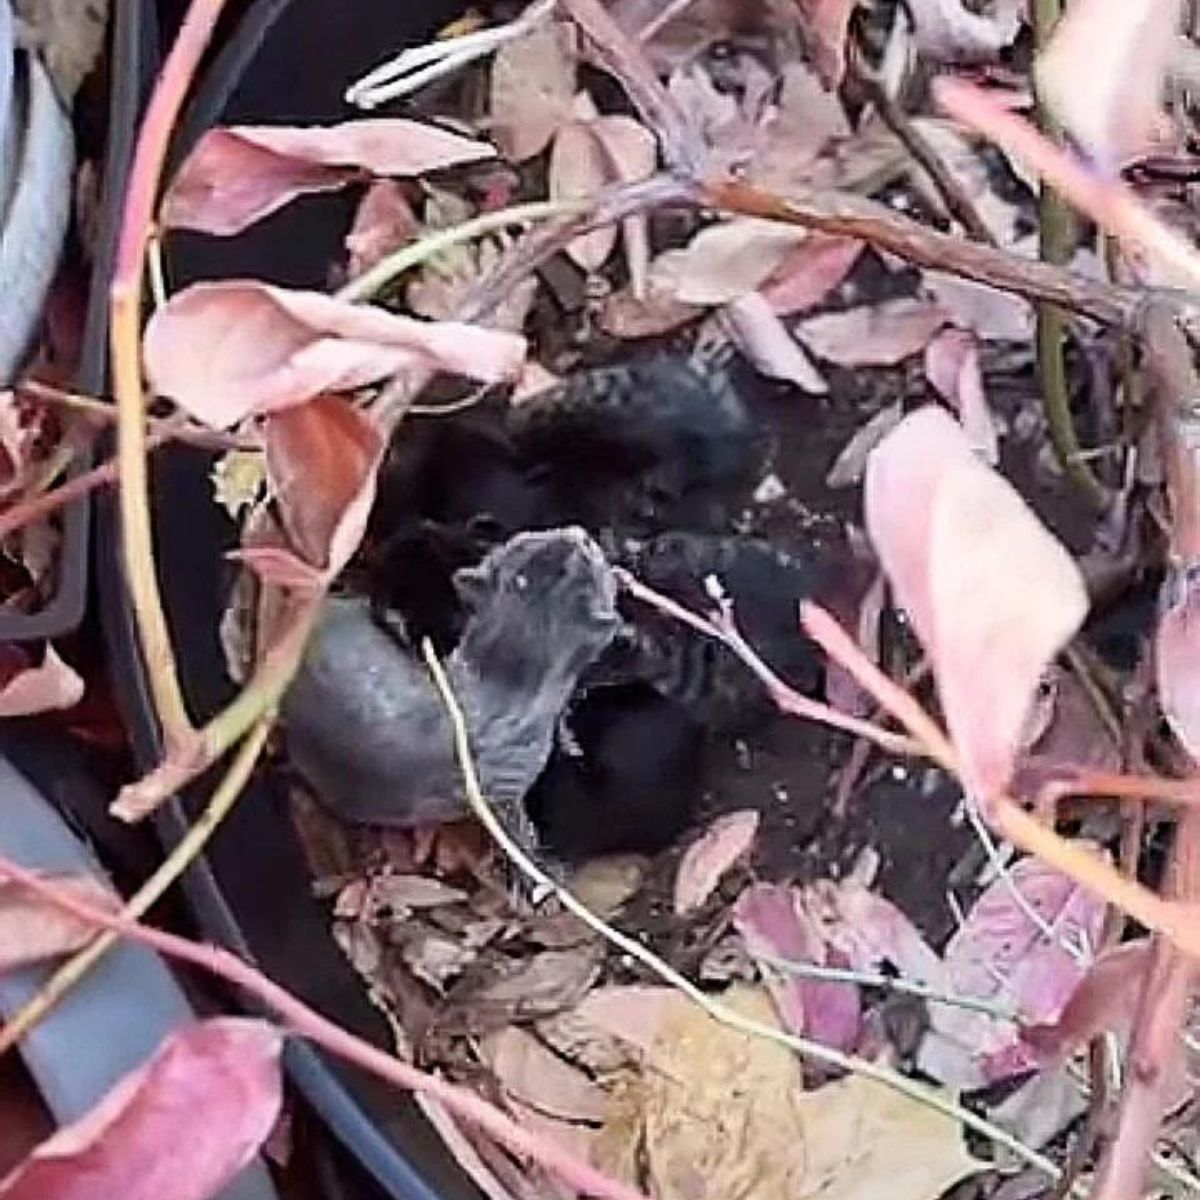 kittens in a flower pot